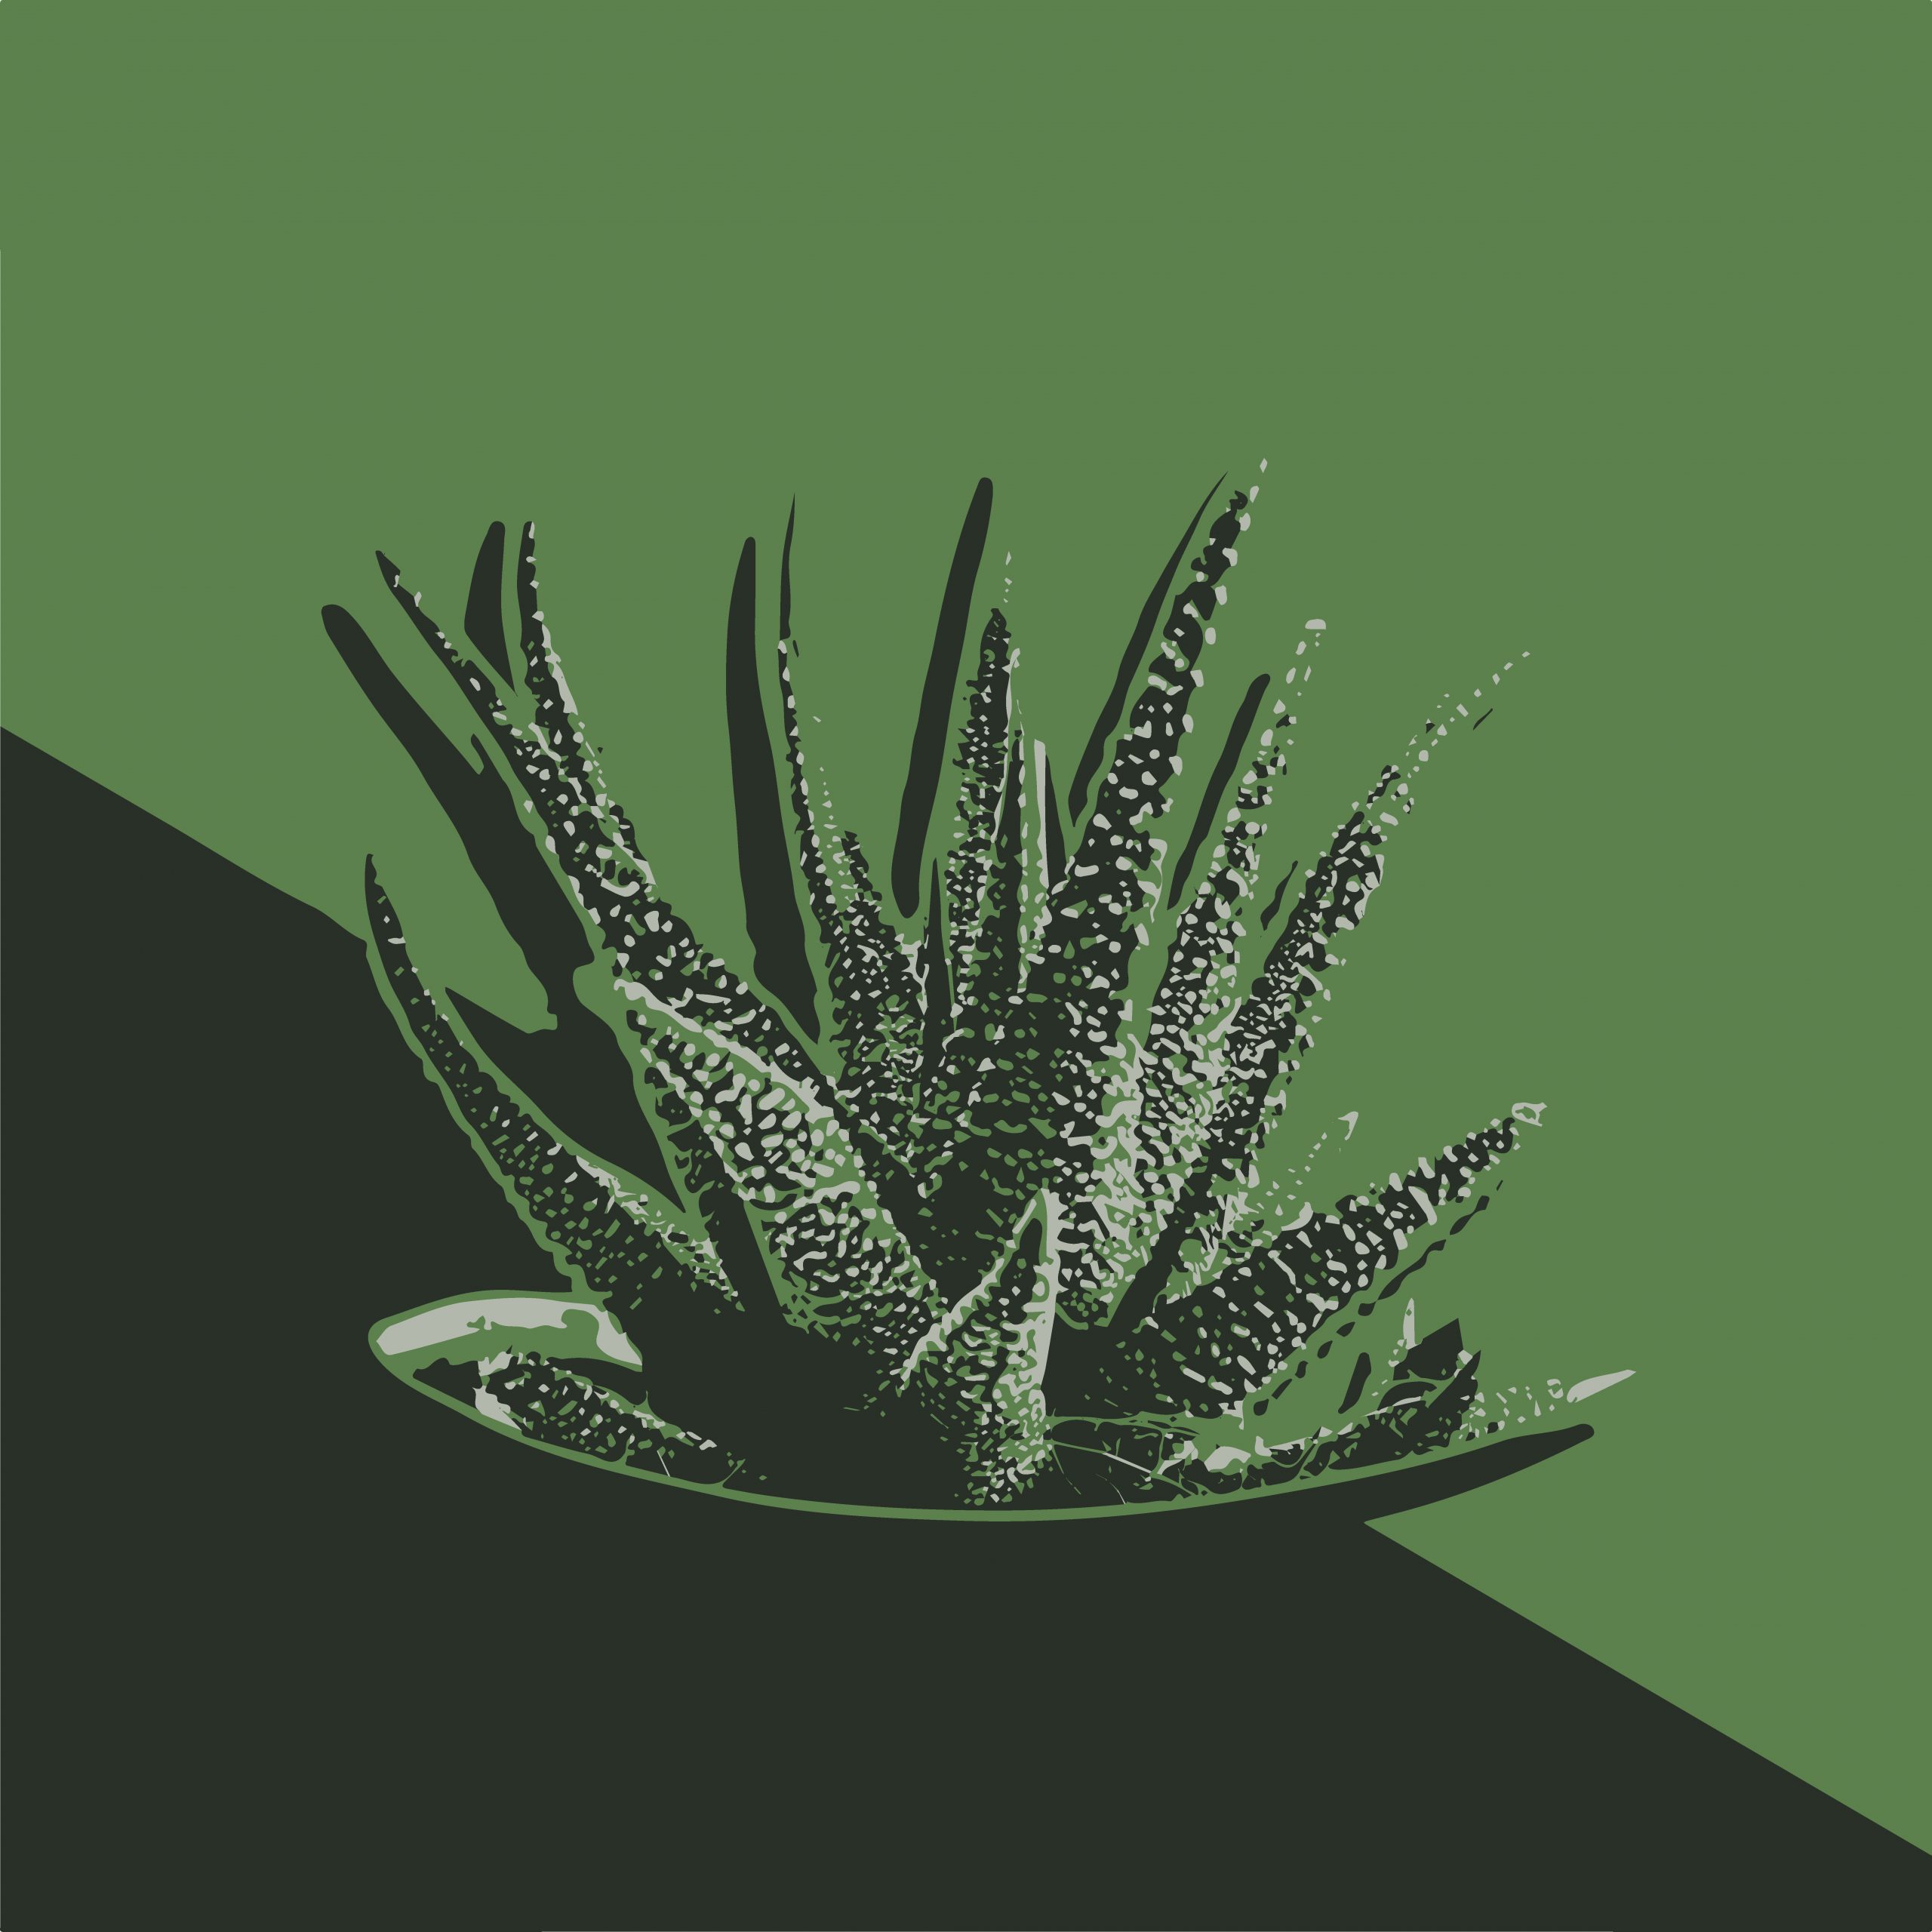 Cactus plant illustration